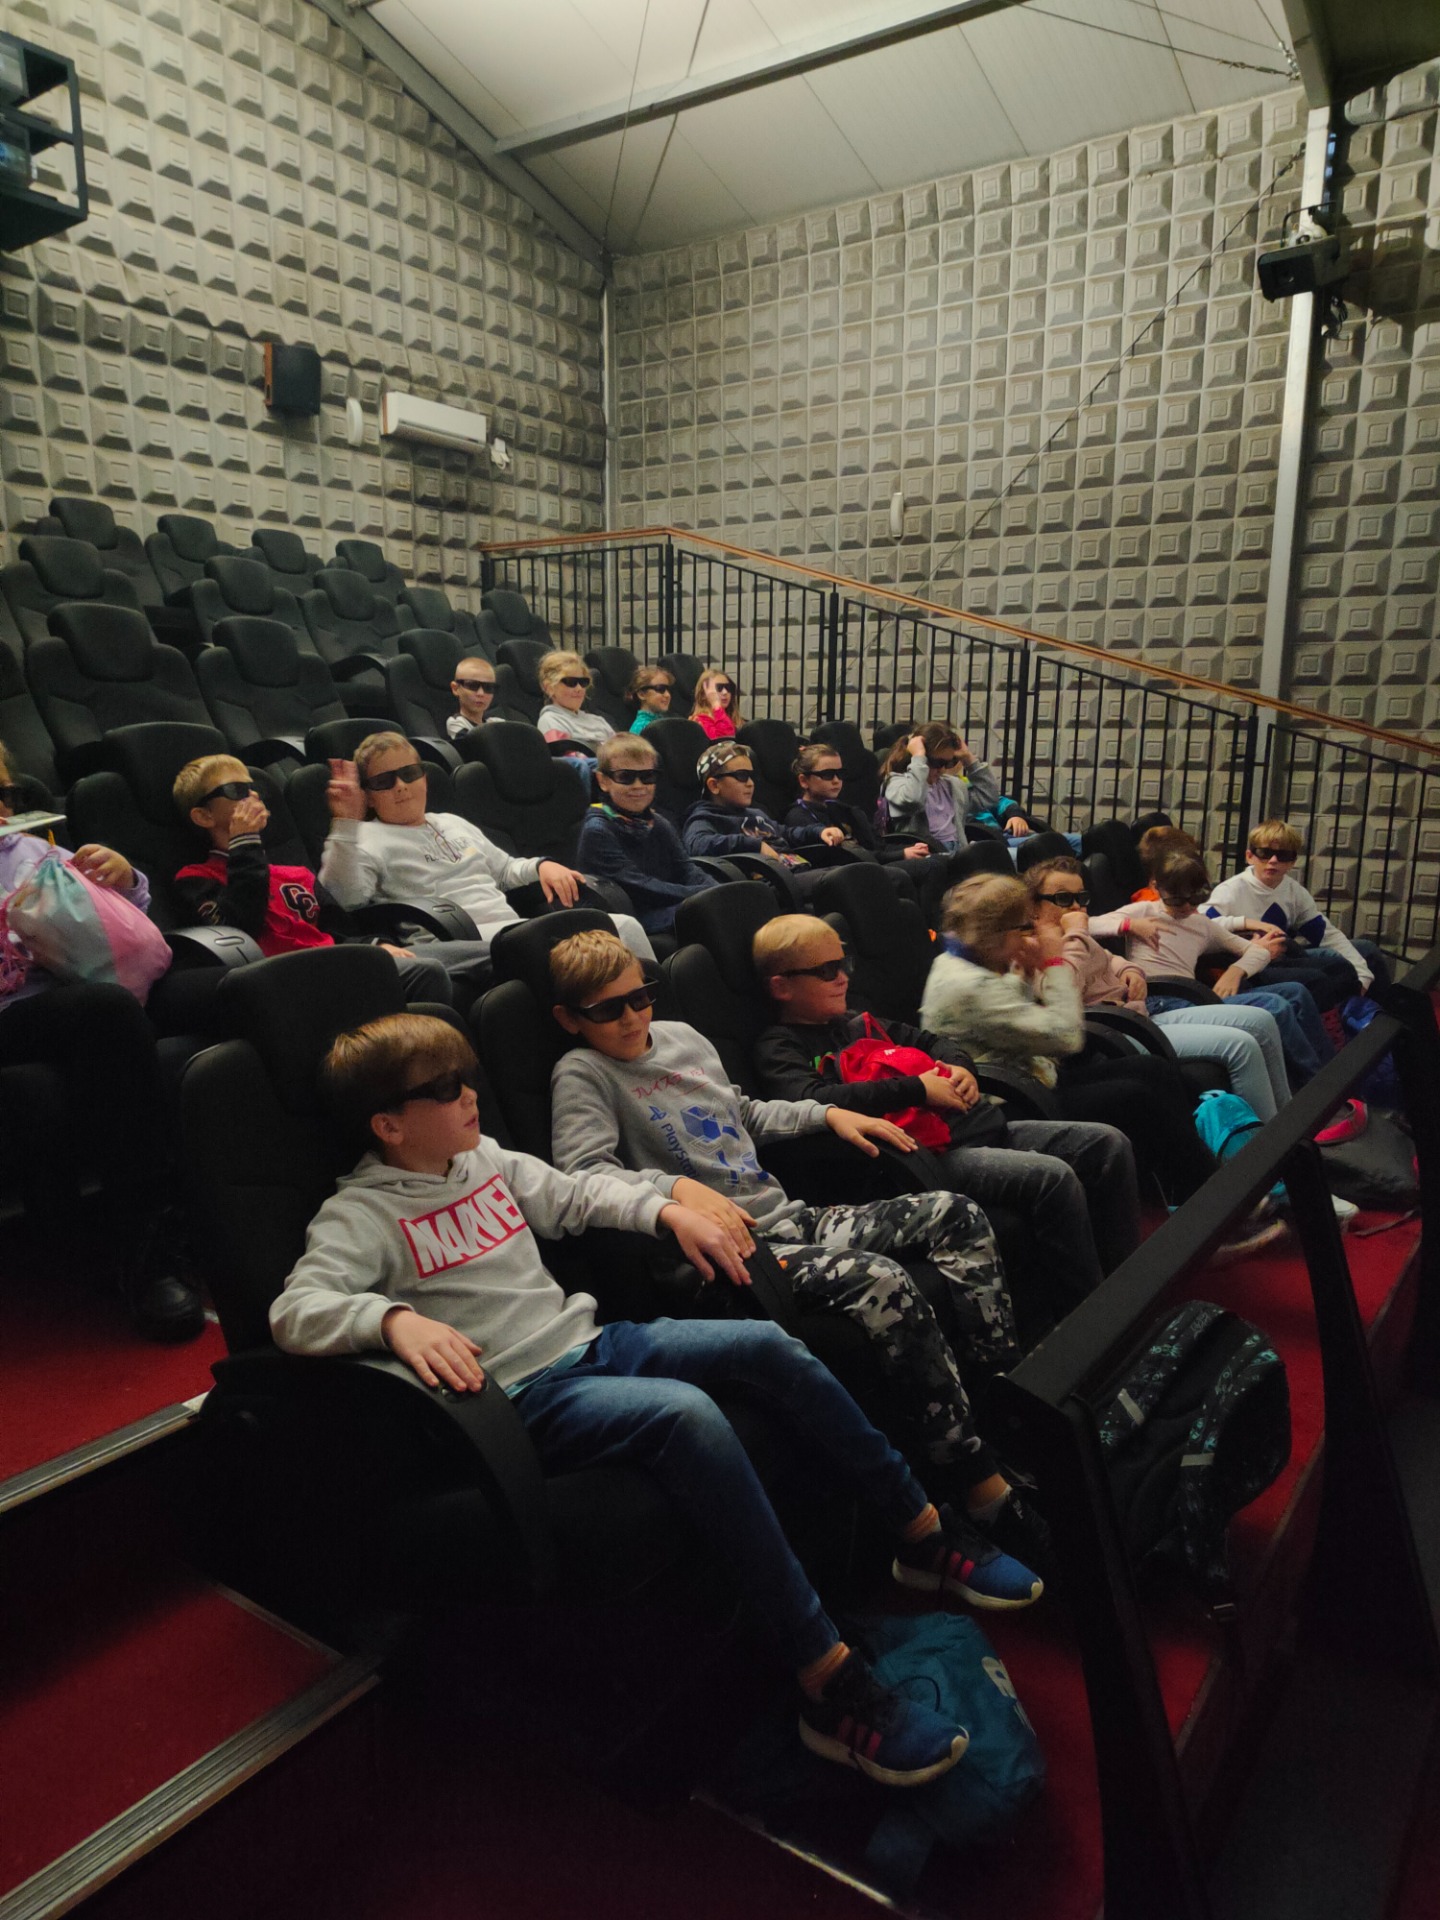 Grupa dzieci siedzą w kinie 5d. Wszyscy mają założone czarne okulary.